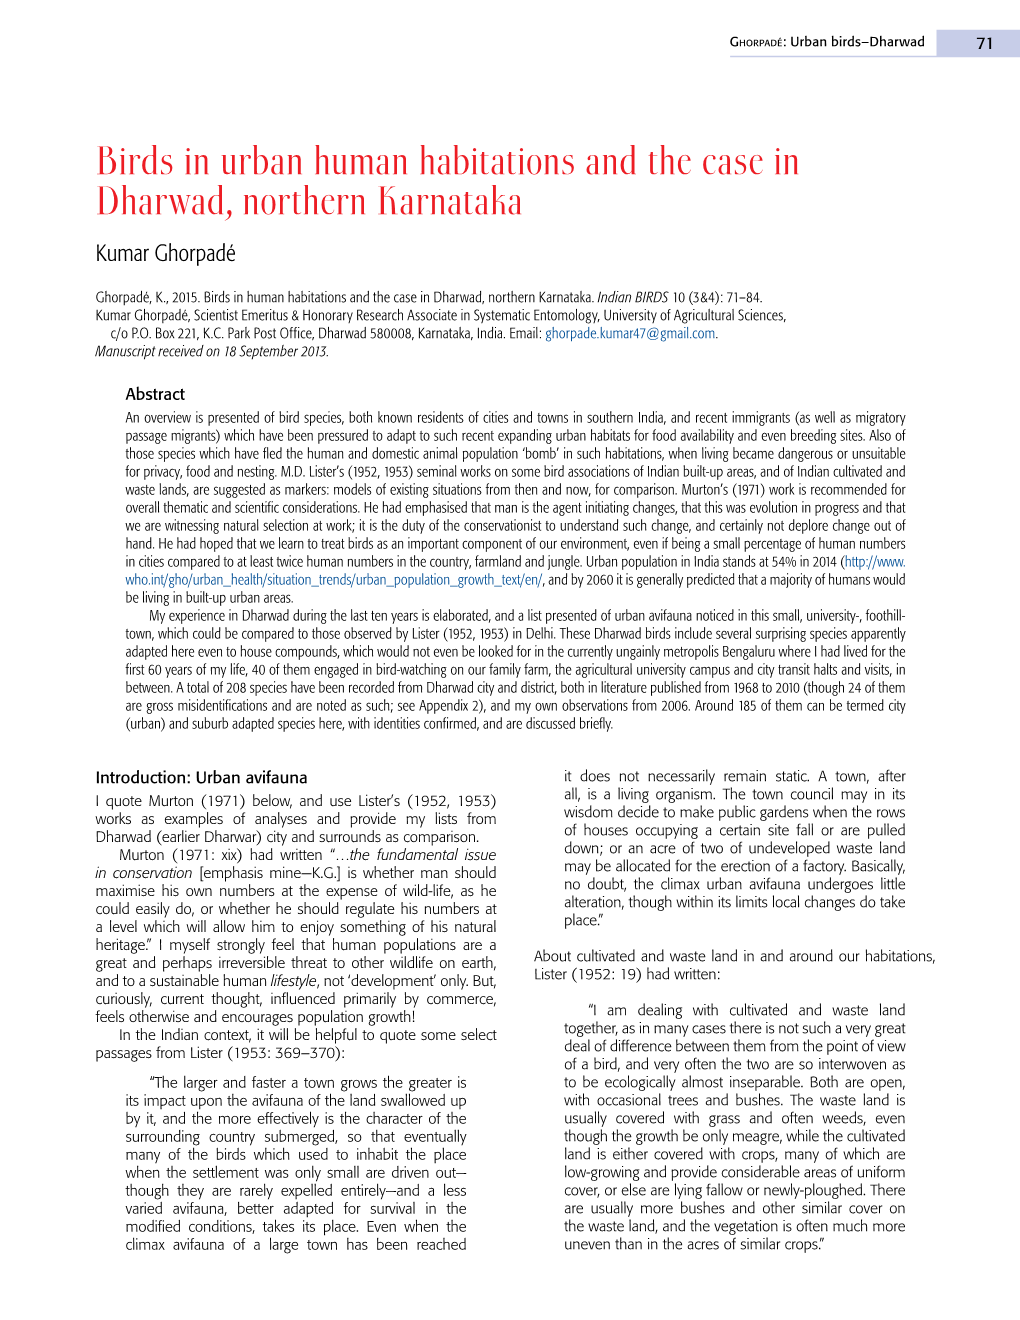 Birds in Urban Human Habitations and the Case in Dharwad, Northern Karnataka Kumar Ghorpadé